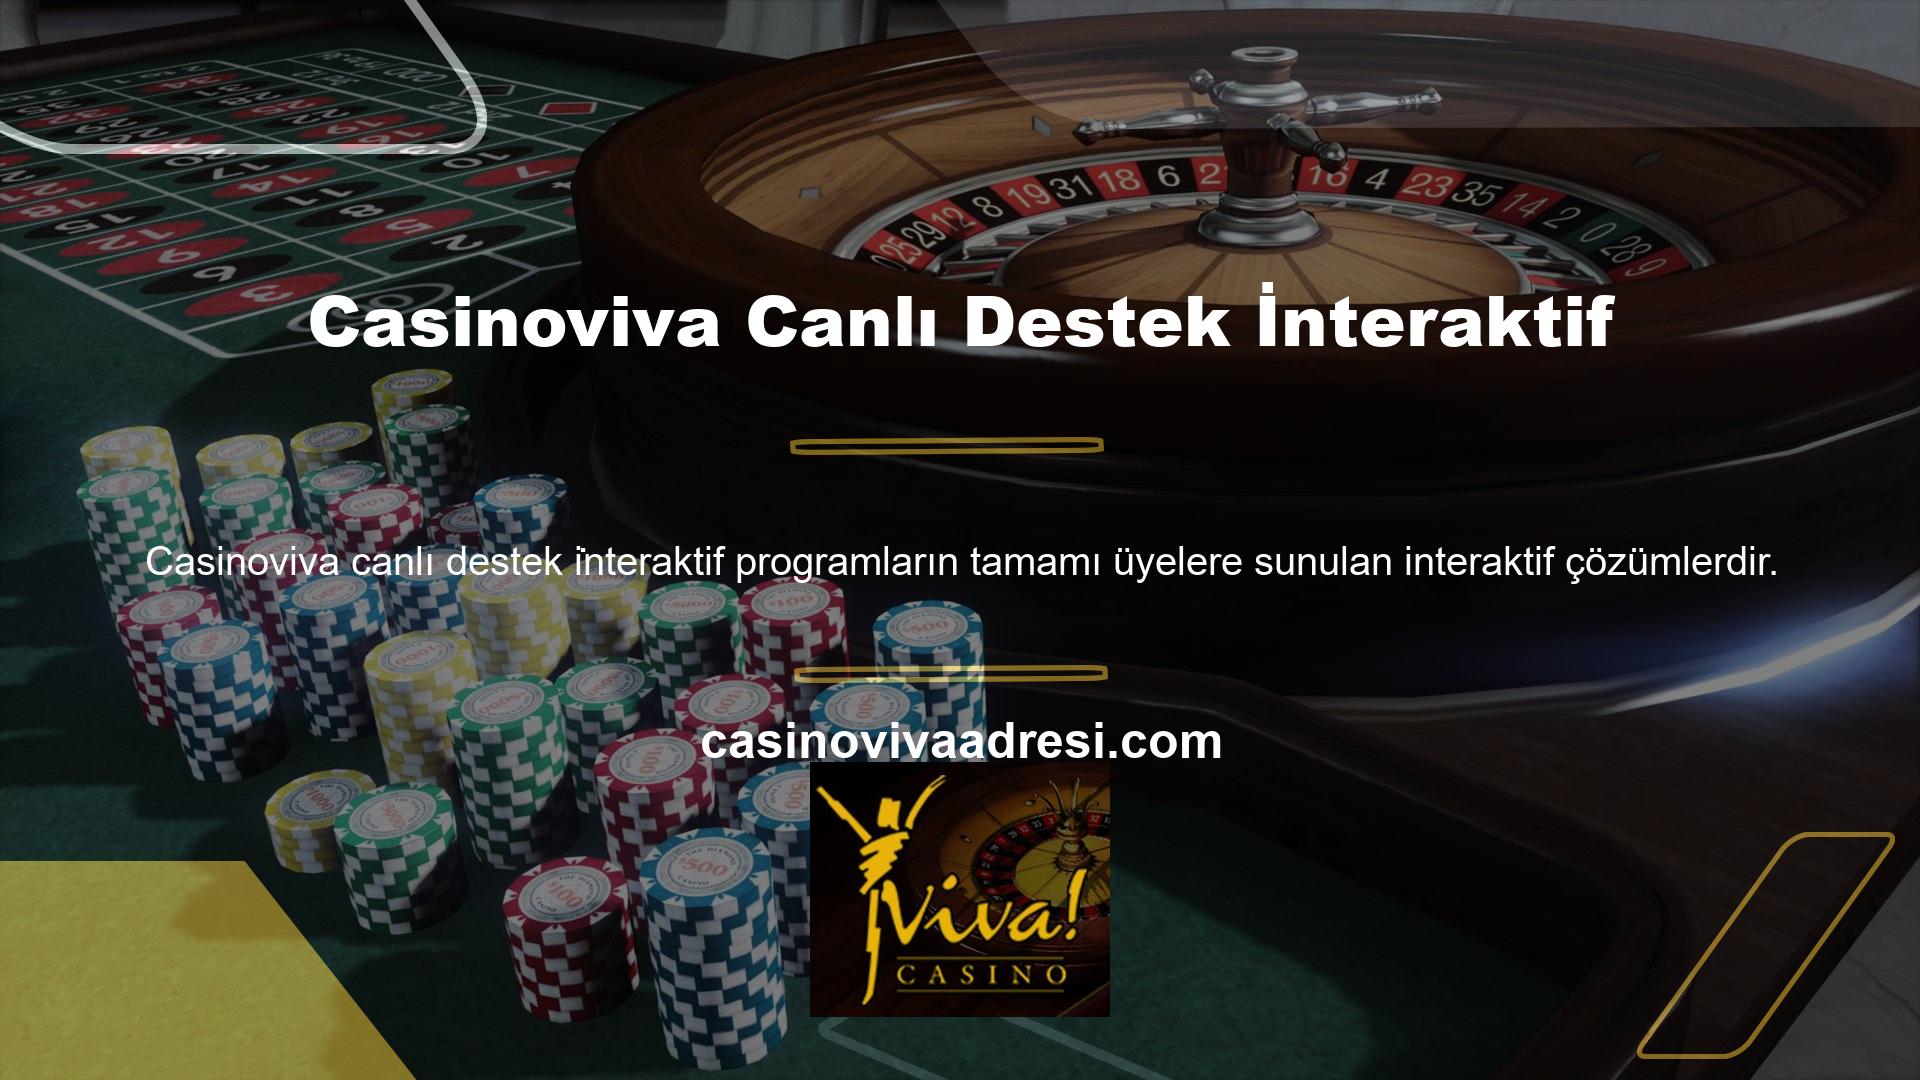 Casinoviva interaktif canlı destek programı da popülerdir